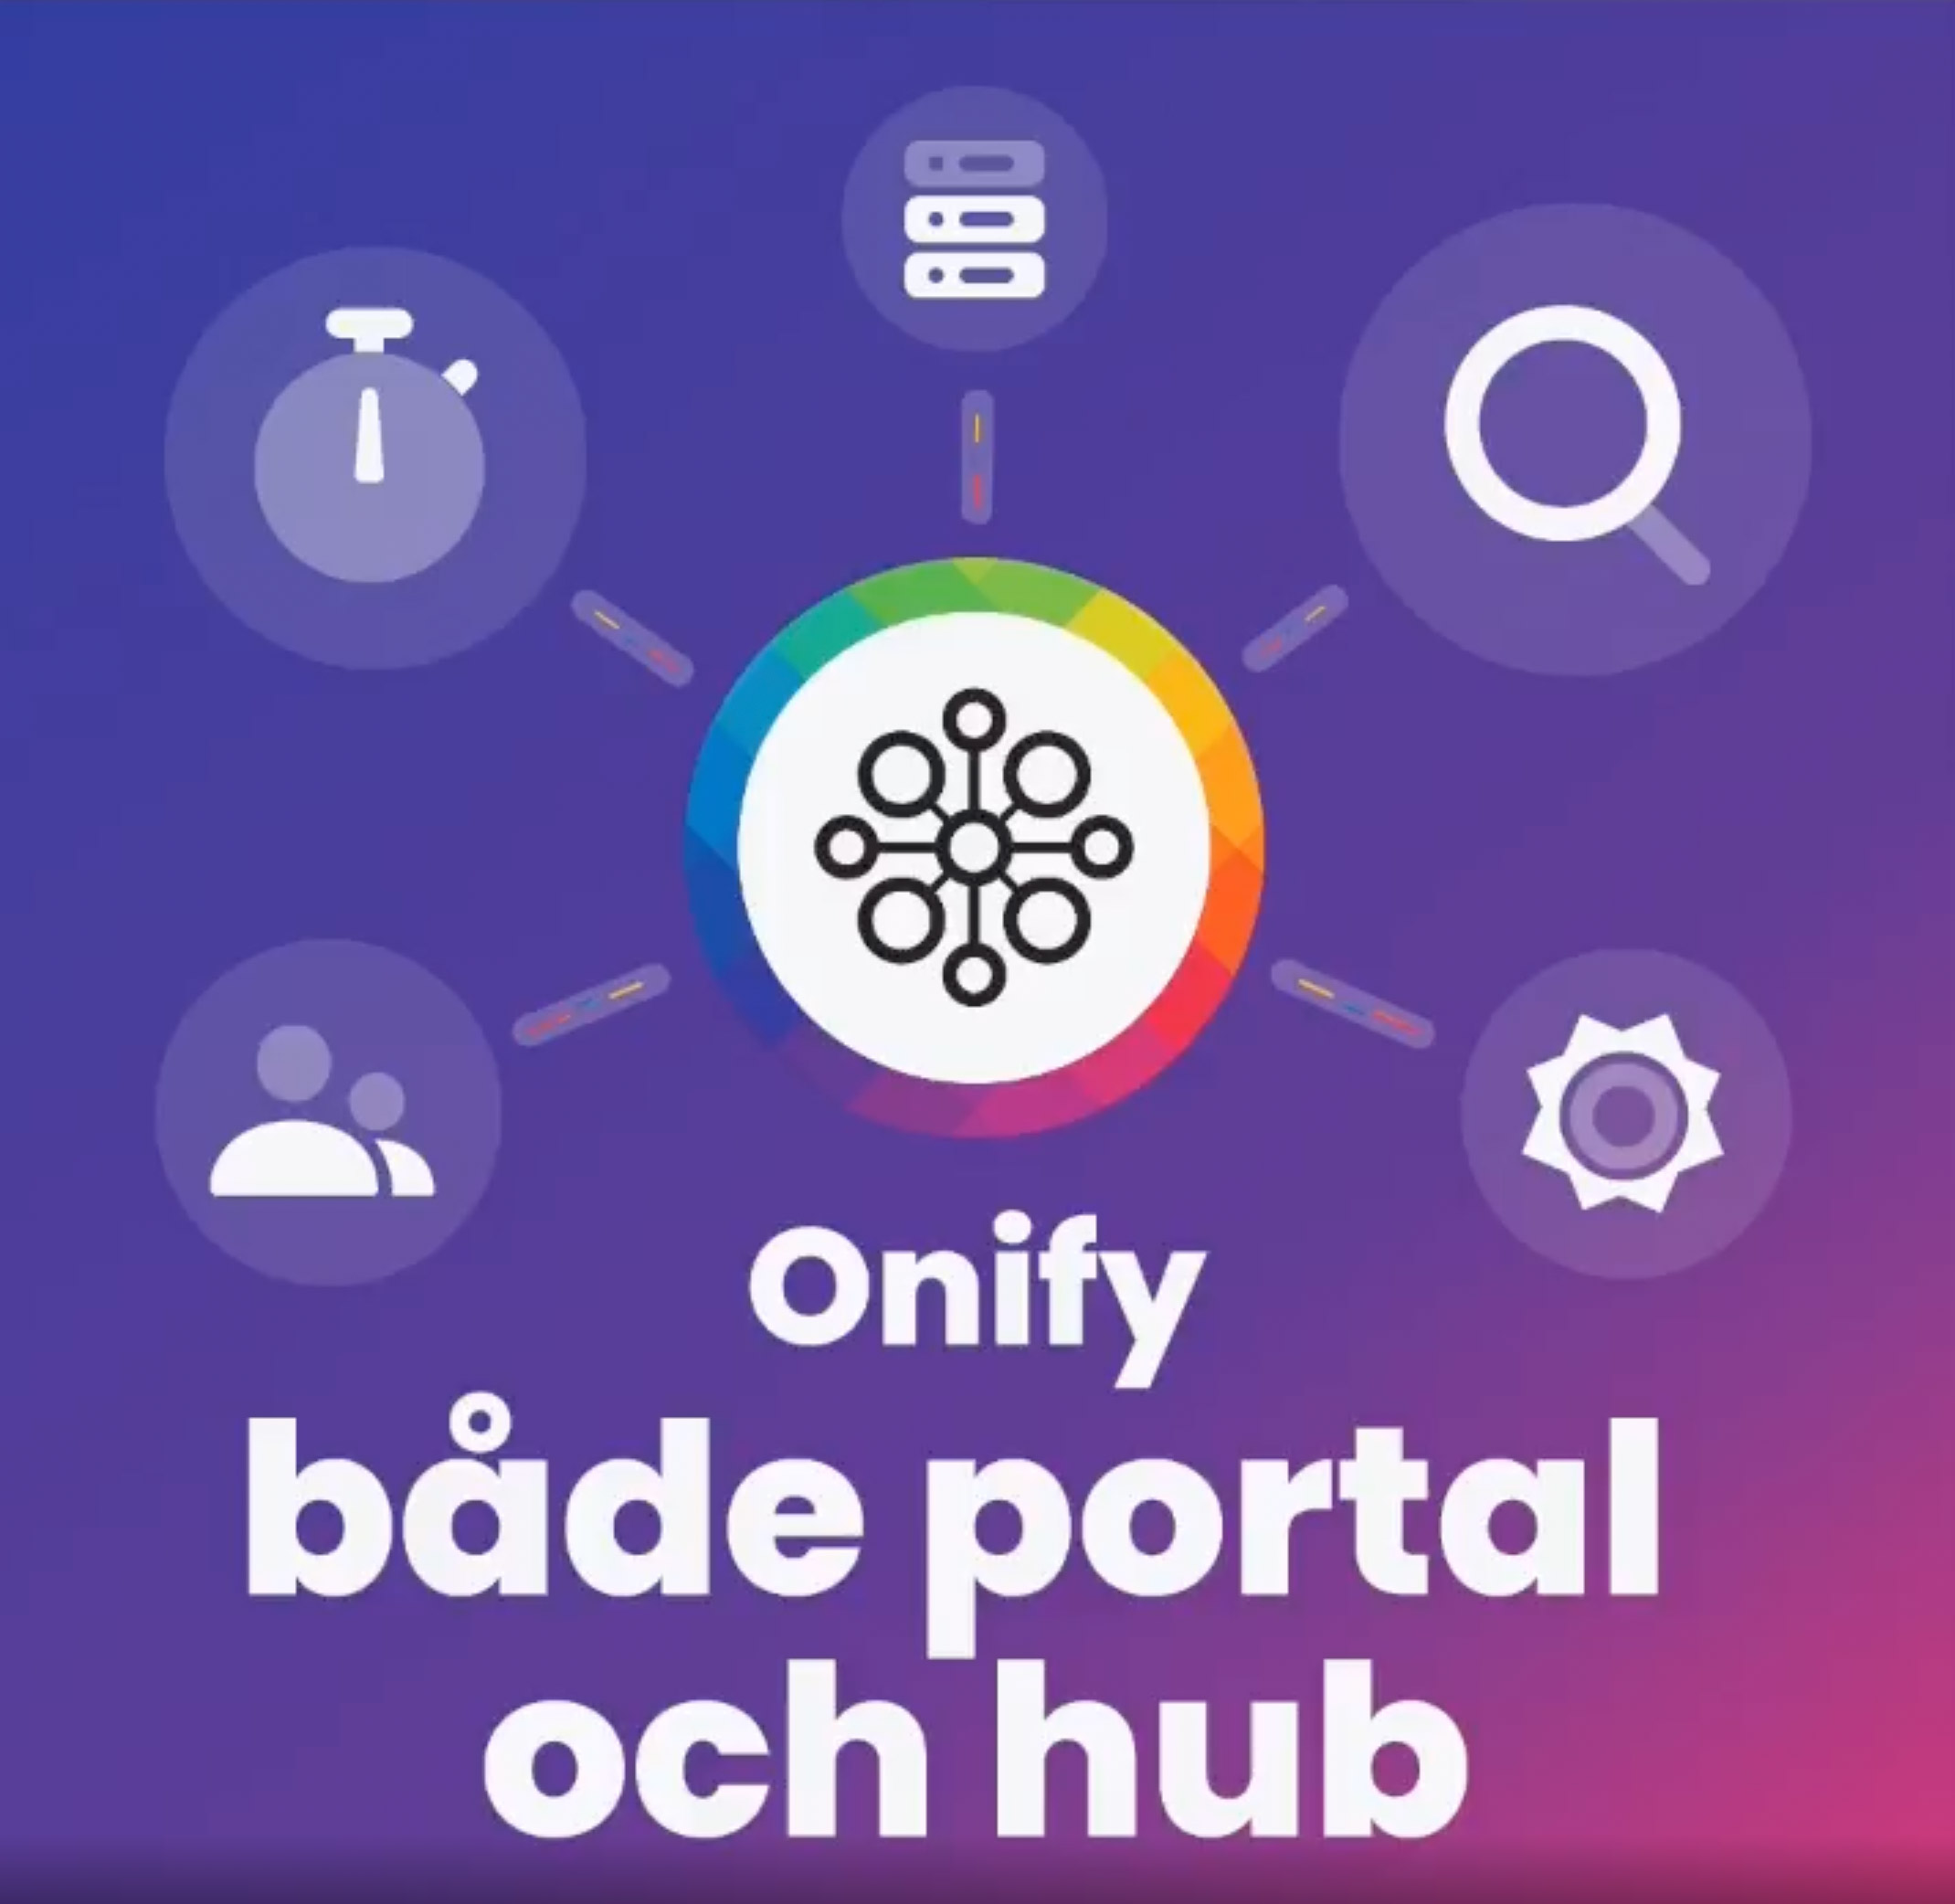 Onify – både portal och hub